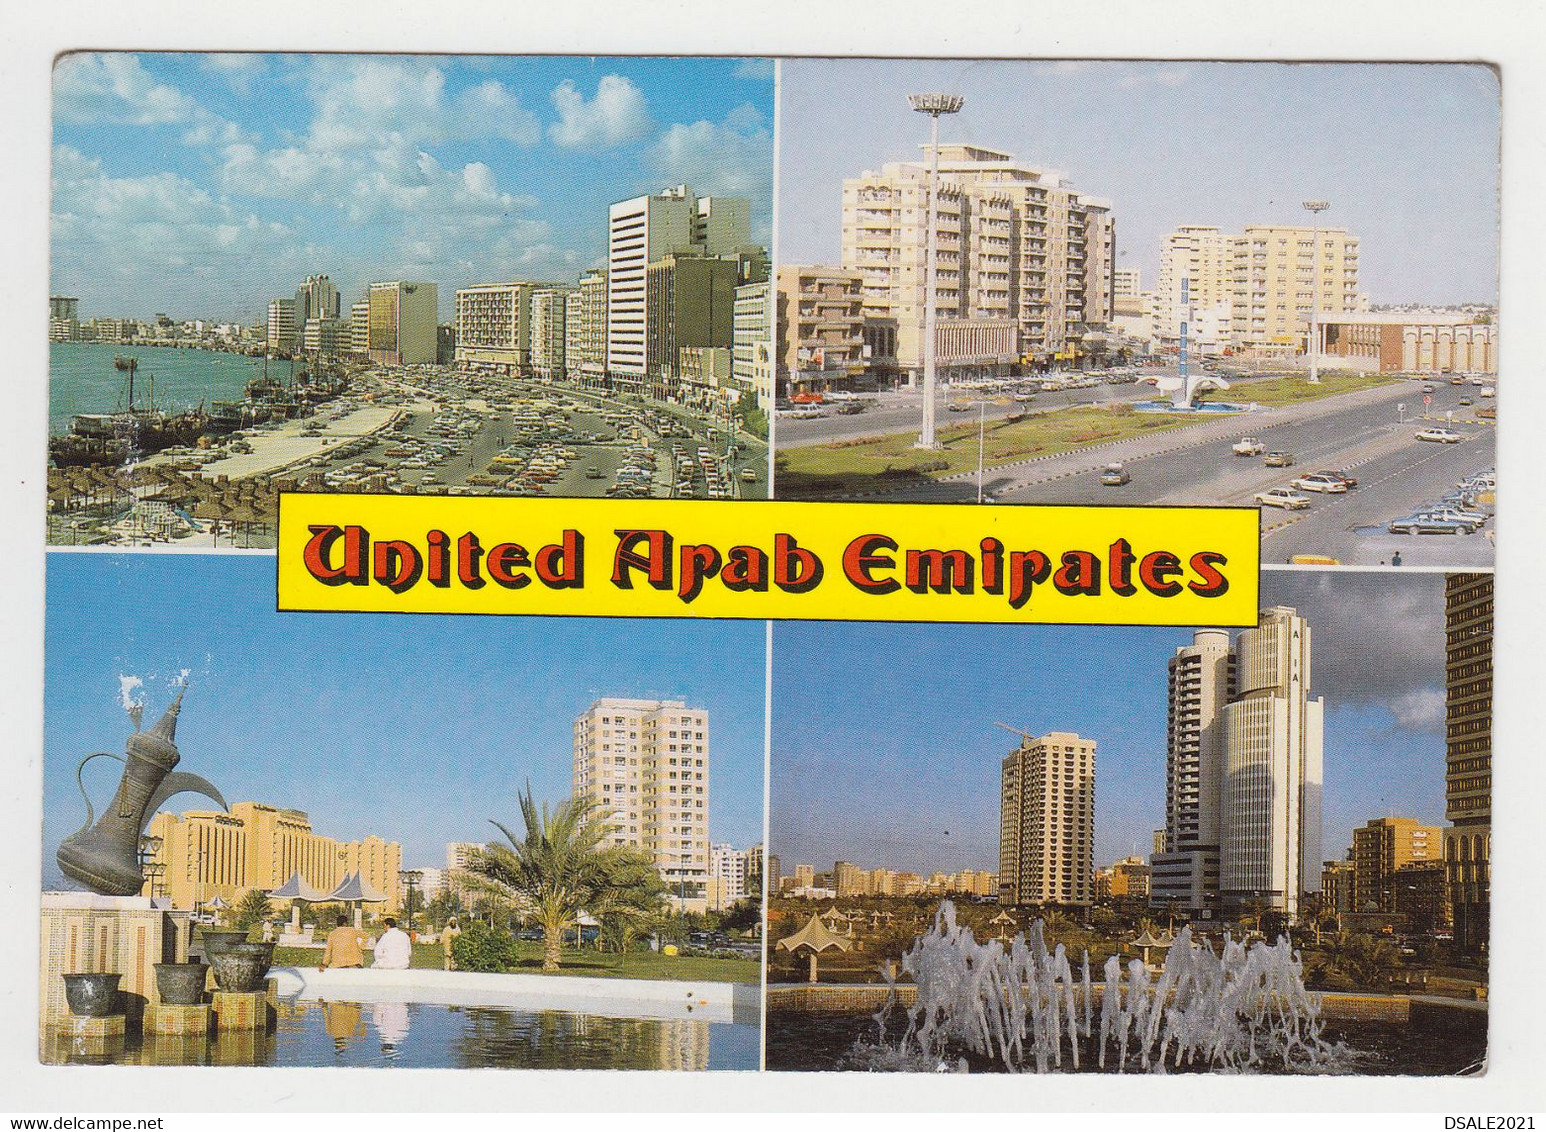 United Arab Emirates DUBAI Four Views Buildings, Park, Old Cars, View Vintage Photo Postcard RPPc (6999) - Emirats Arabes Unis